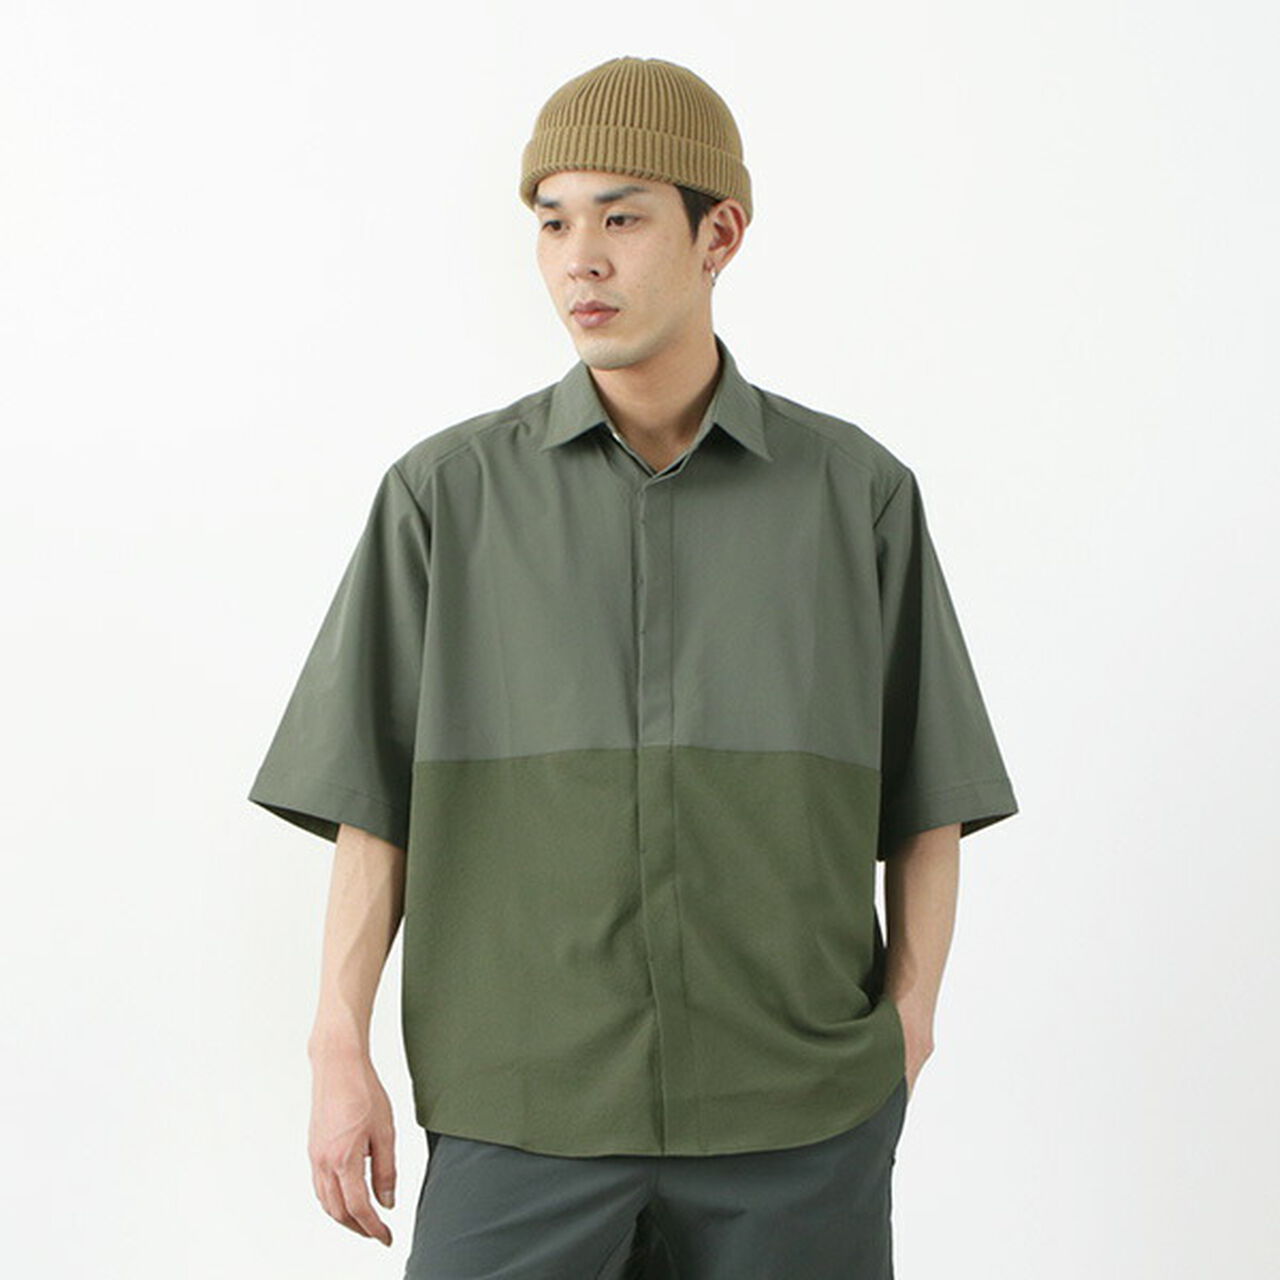 Ice x Dry Short Sleeve Shirt,Olive, large image number 0